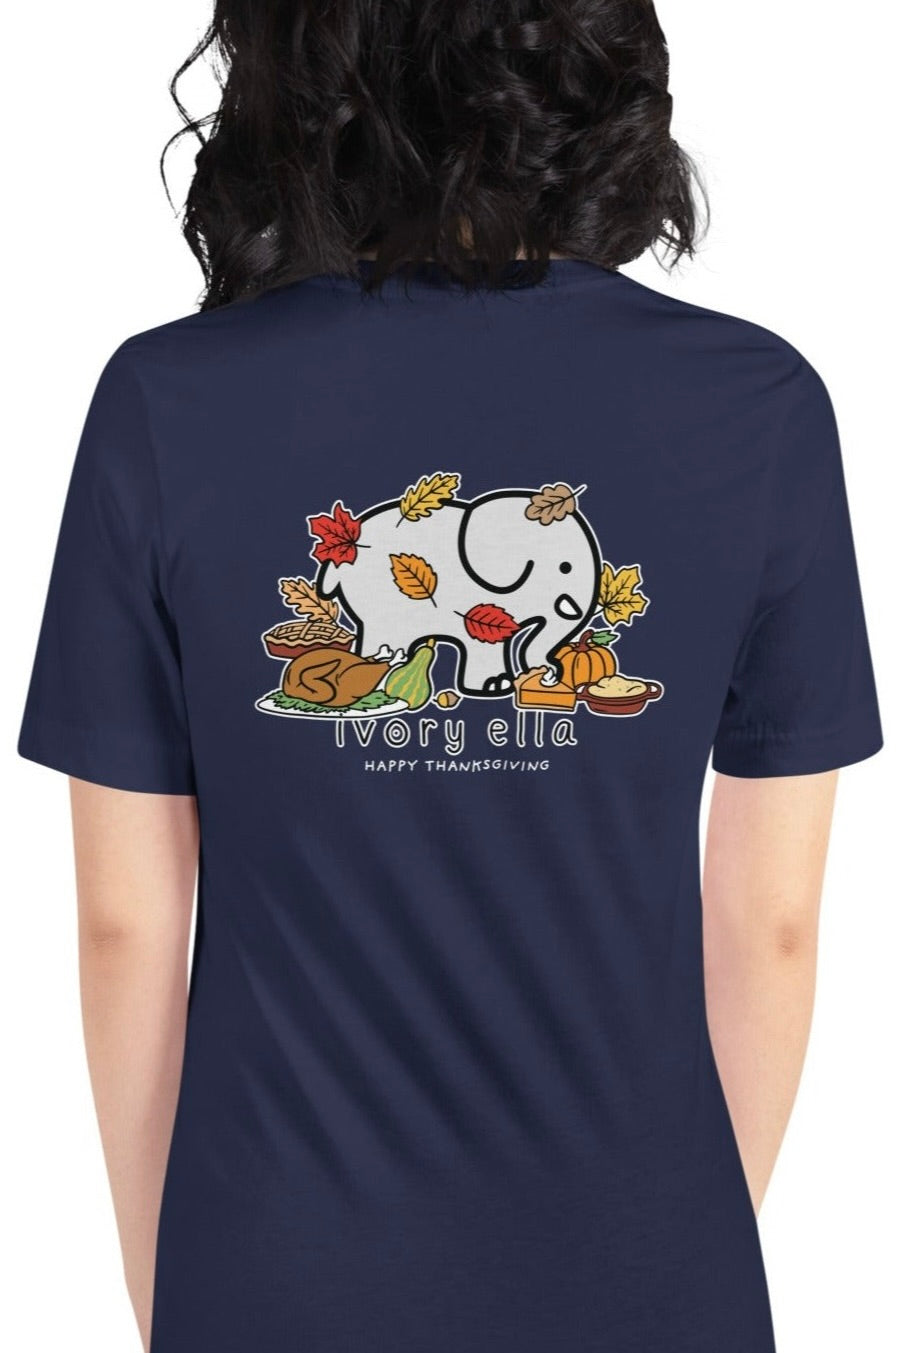 Thanksgiving Feast Unisex Short Sleeve T-Shirt